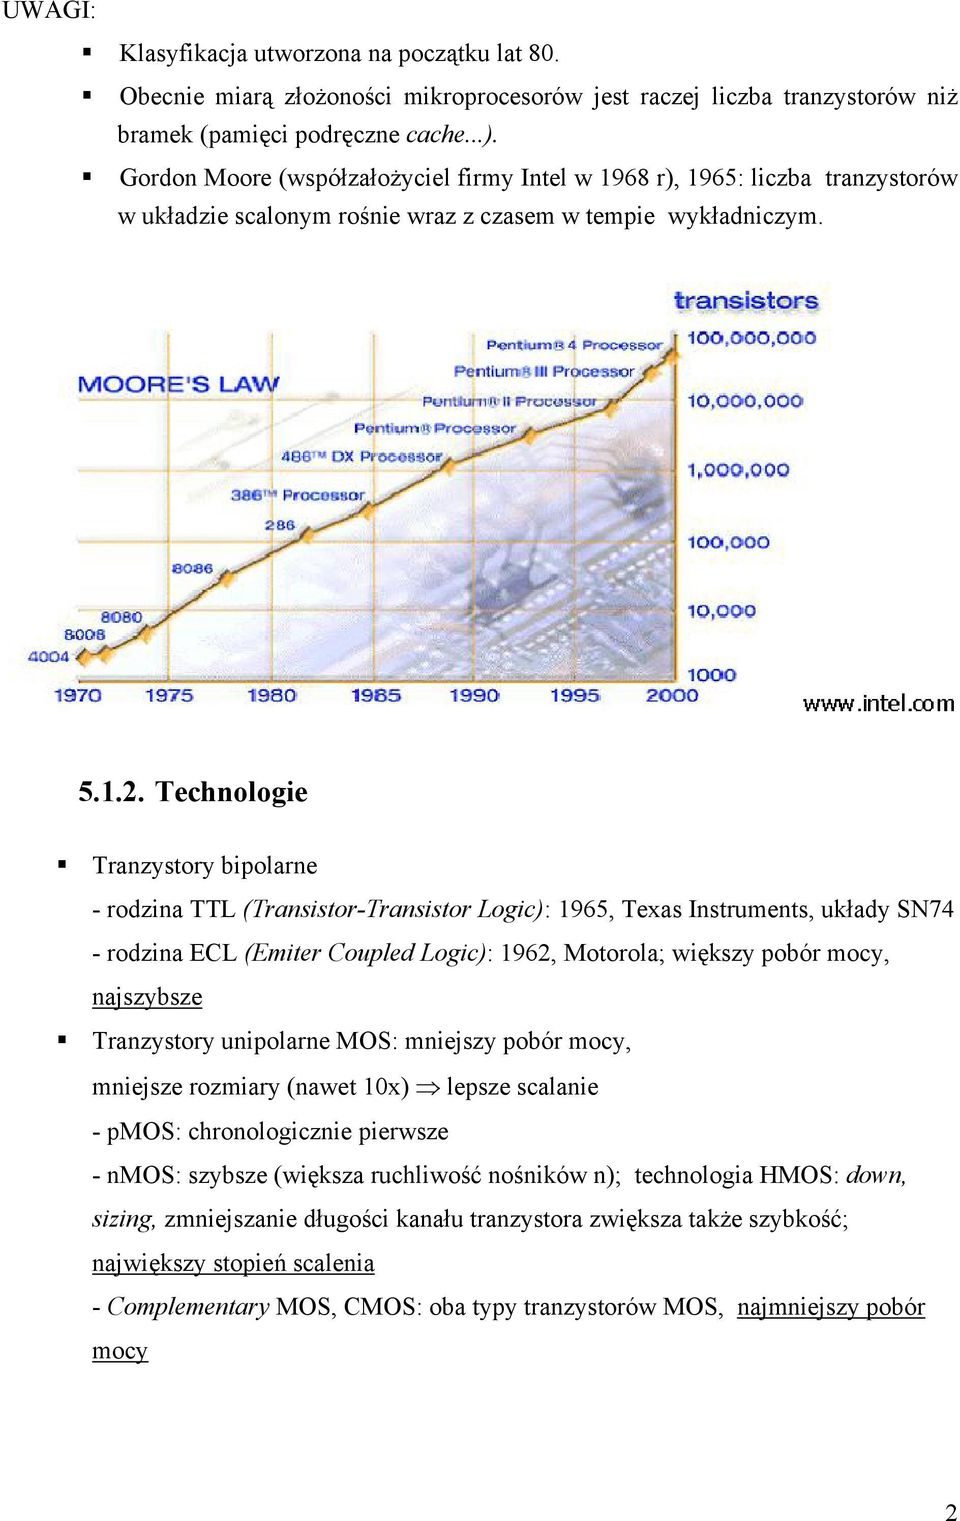 Technologie Tranzystory bipolarne - rodzina TTL (Transistor-Transistor Logic): 1965, Texas Instruments, układy SN74 - rodzina ECL (Emiter Coupled Logic): 1962, Motorola; większy pobór mocy,